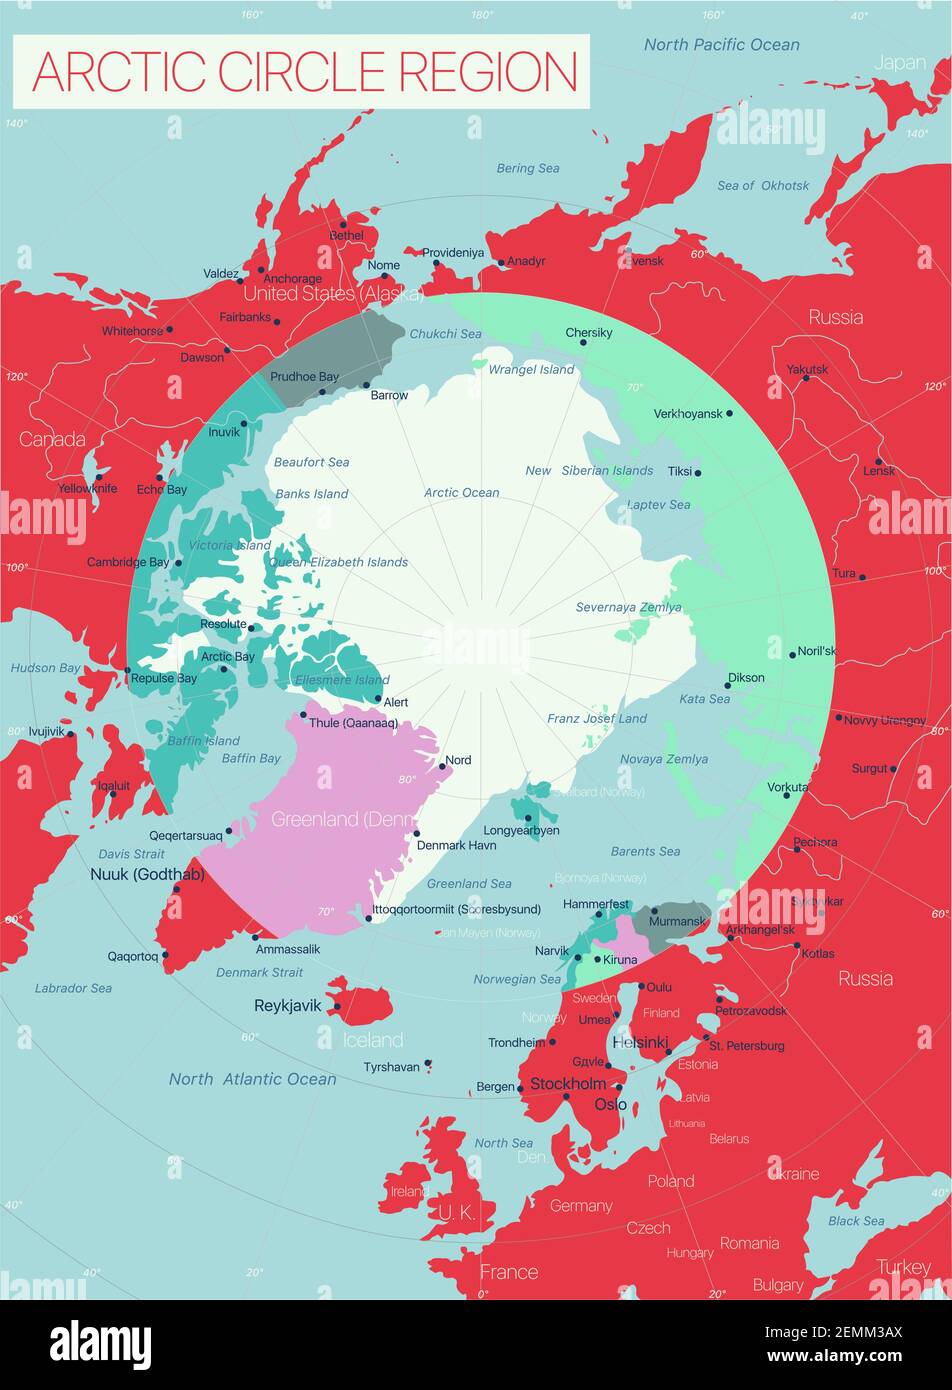 Région du cercle arctique carte détaillée modifiable avec régions villes et sites géographiques. Fichier vectoriel EPS-10 Illustration de Vecteur